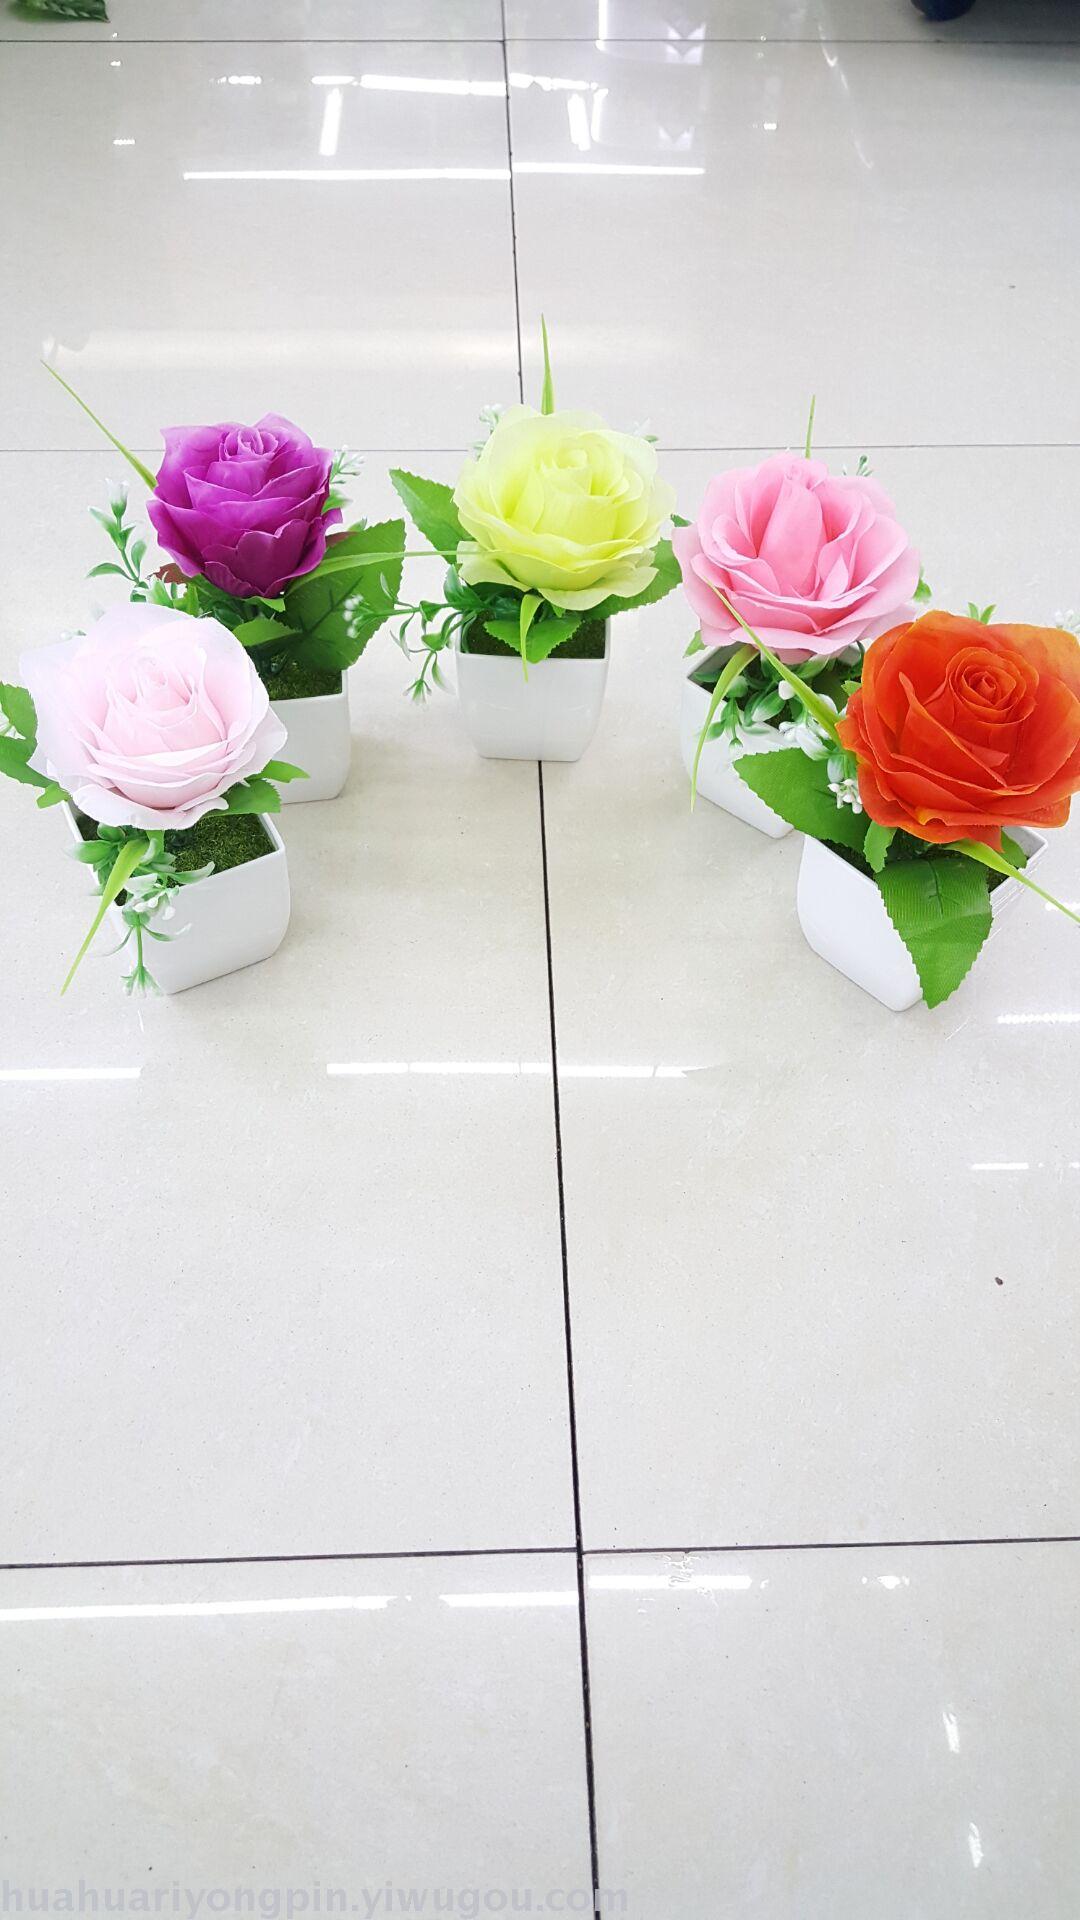 新款单支小玫瑰盆景多色混装简单装饰生日礼物摆件